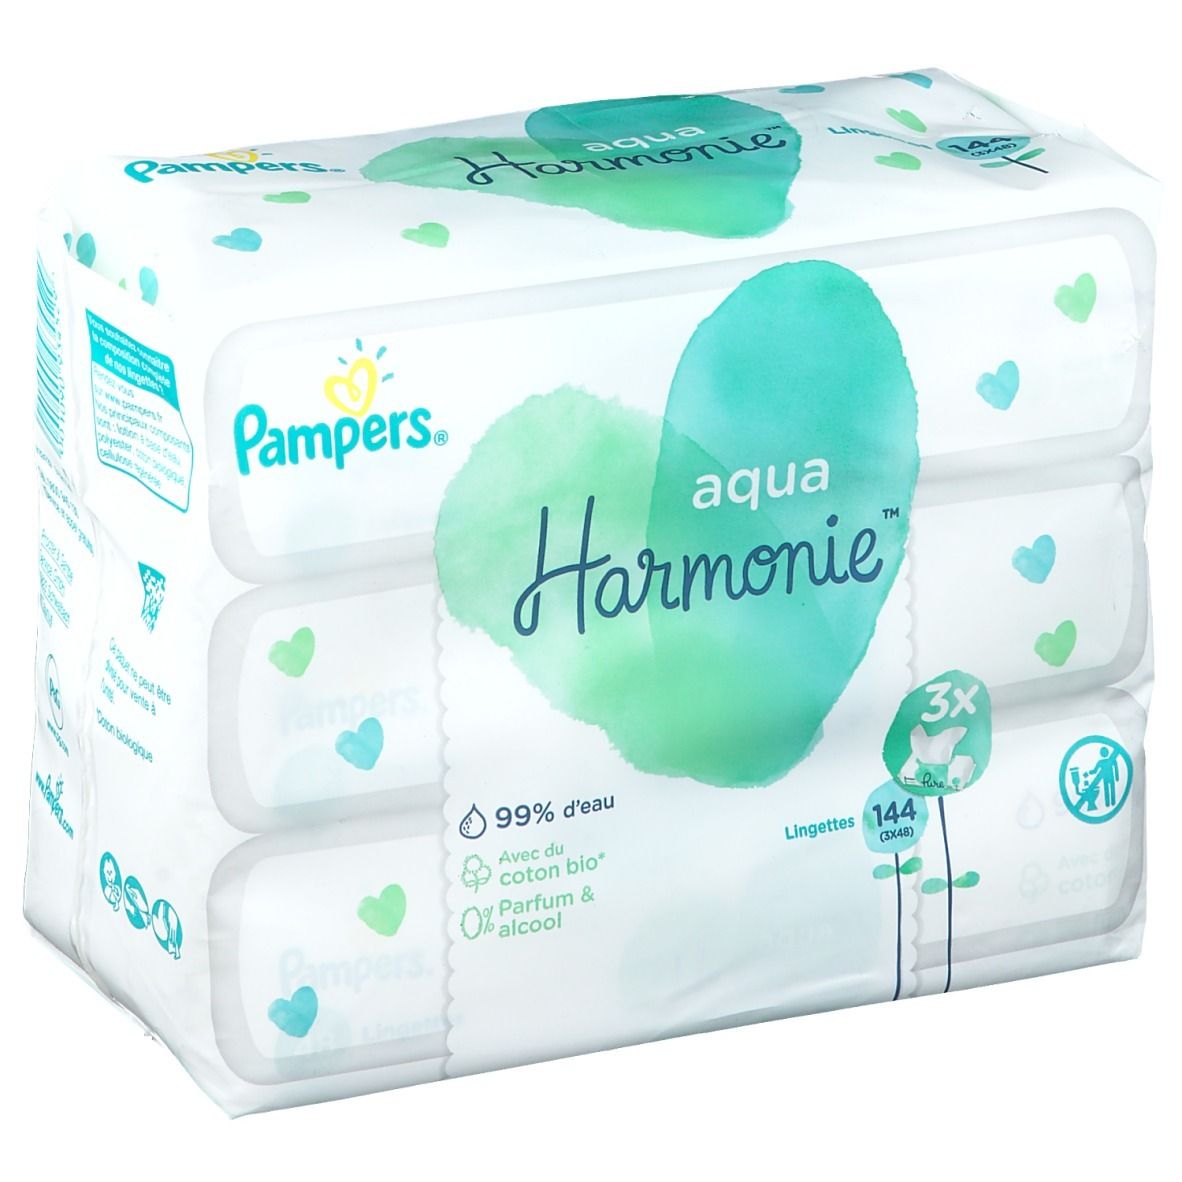 Pharmacie de la Gare - Parapharmacie Pampers Harmonie Aqua Lingettes  Imprégnées 0% Plastique Paquet/48 - RUMILLY